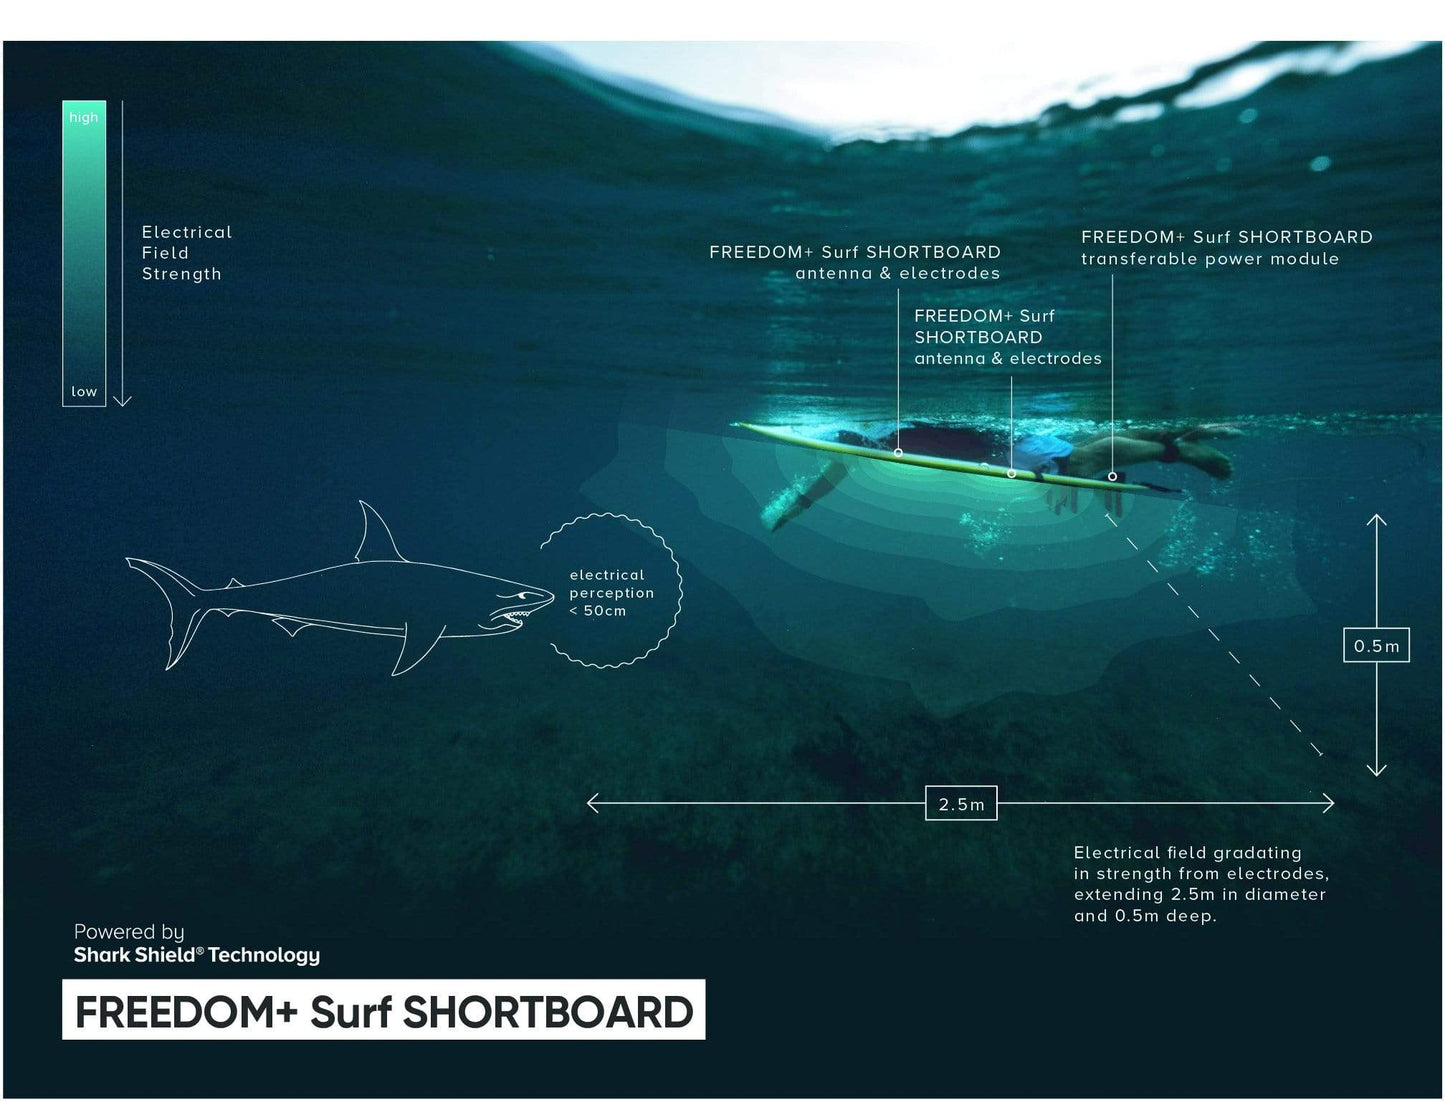 Pré-commande Tail pad + Antenne pour dispositif Anti-requin FREEDOM+ Surf - Shortboard,  pour planche de surf de moins de 6'6